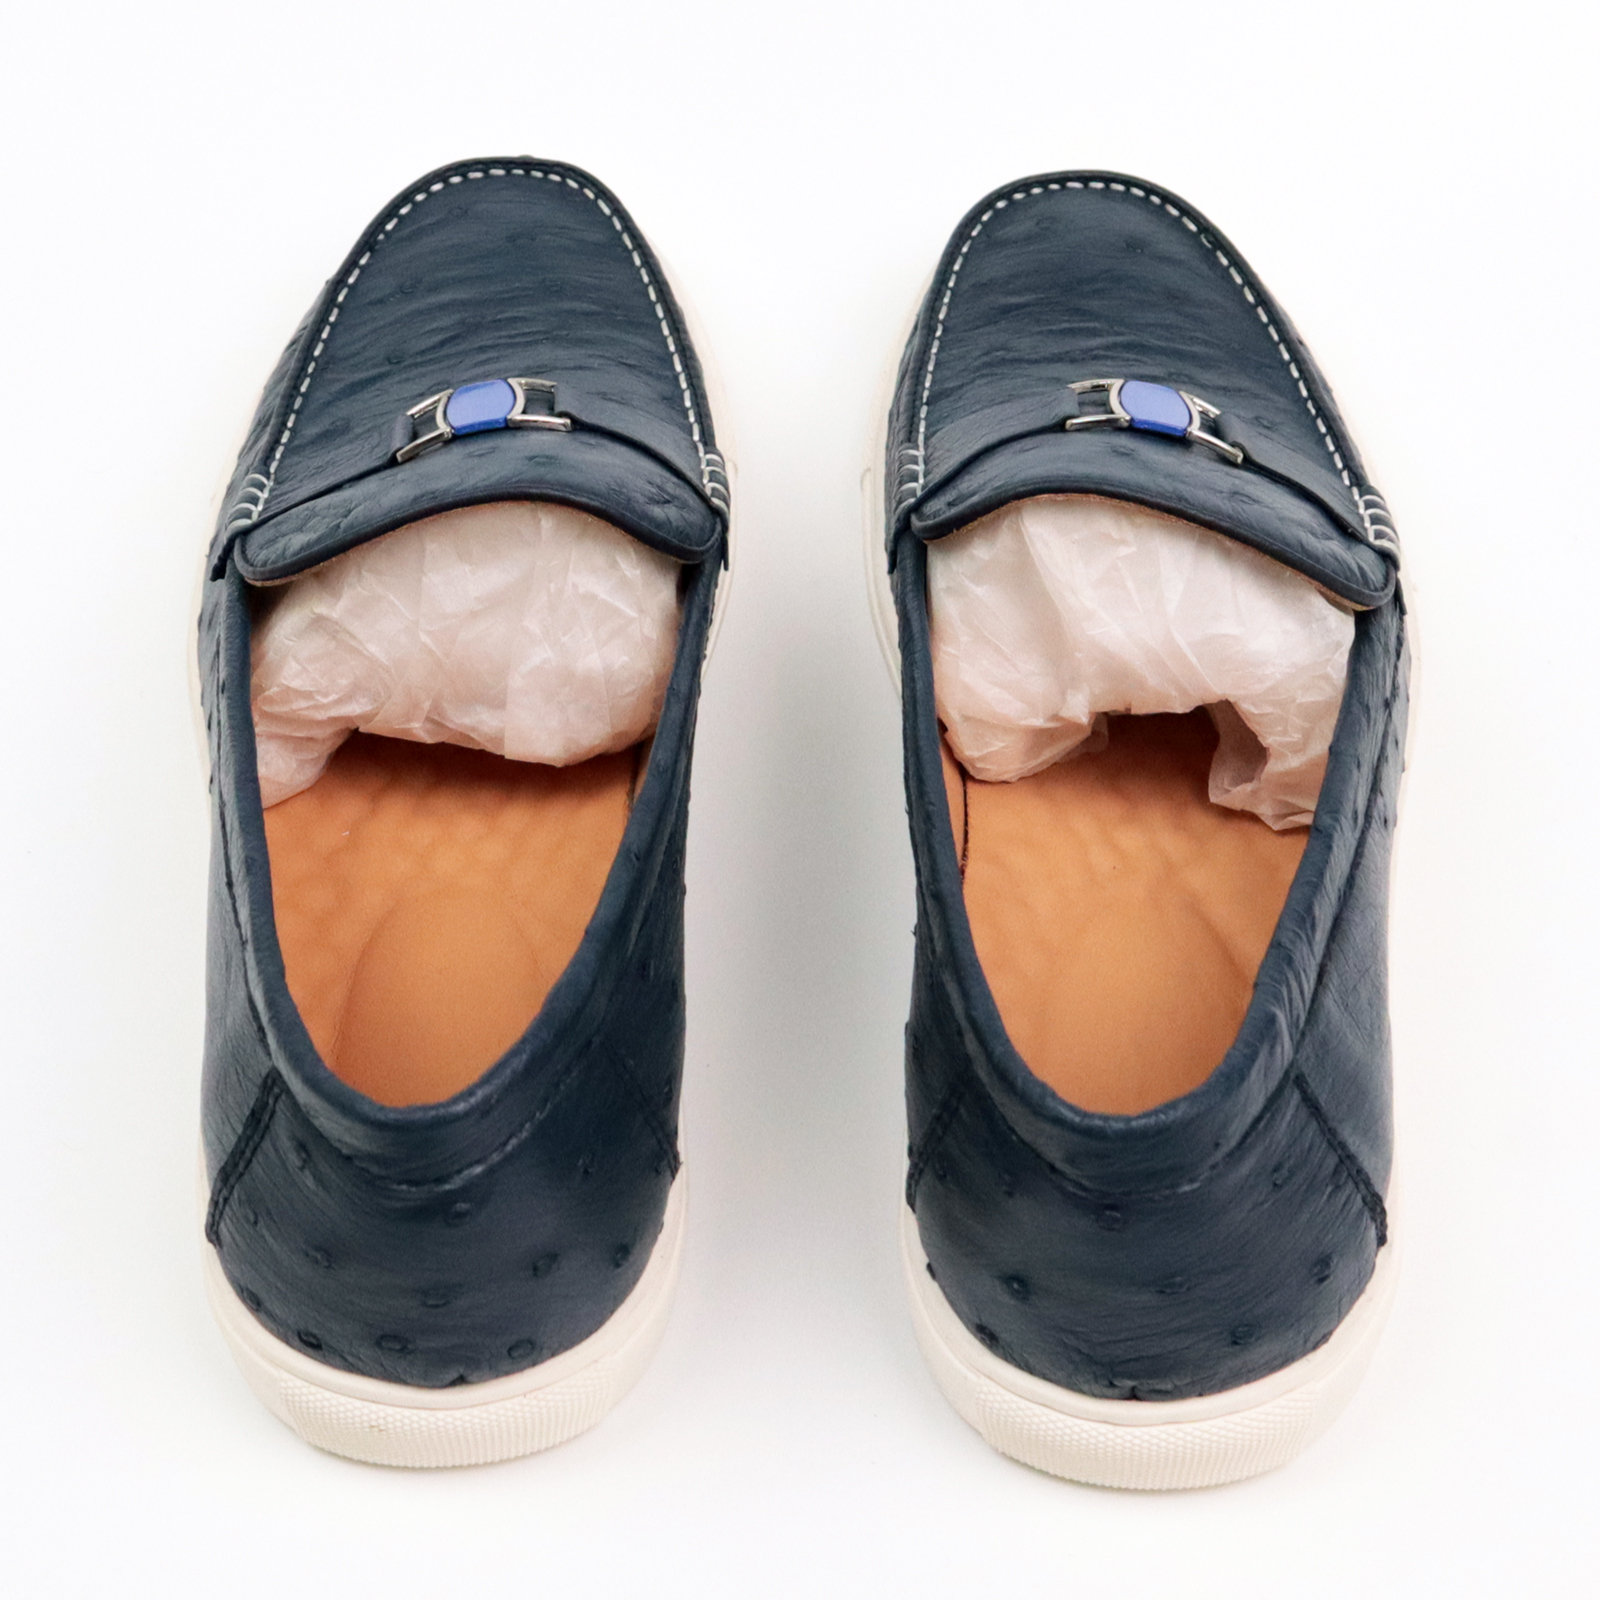 Men's Ostrich Leather Slip On Loafer Bit Shoes Formal